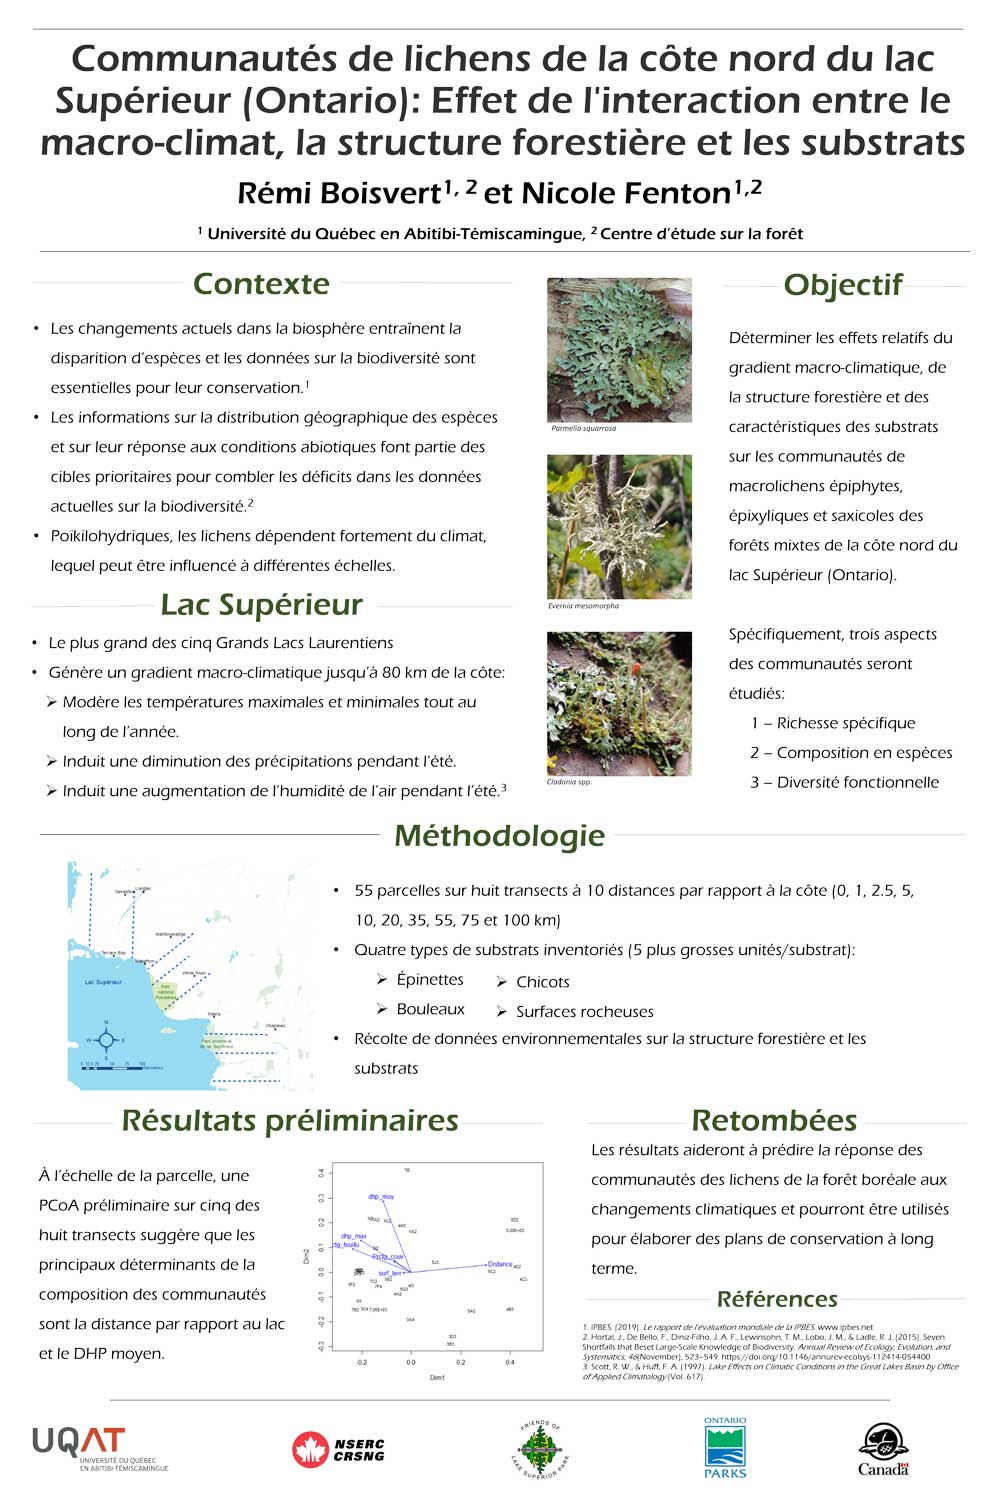 Communautés de lichens de la côte nord du lac Supérieur (Ontario): Effet de l'interaction entre le macro-climat, la structure forestière et les substrats